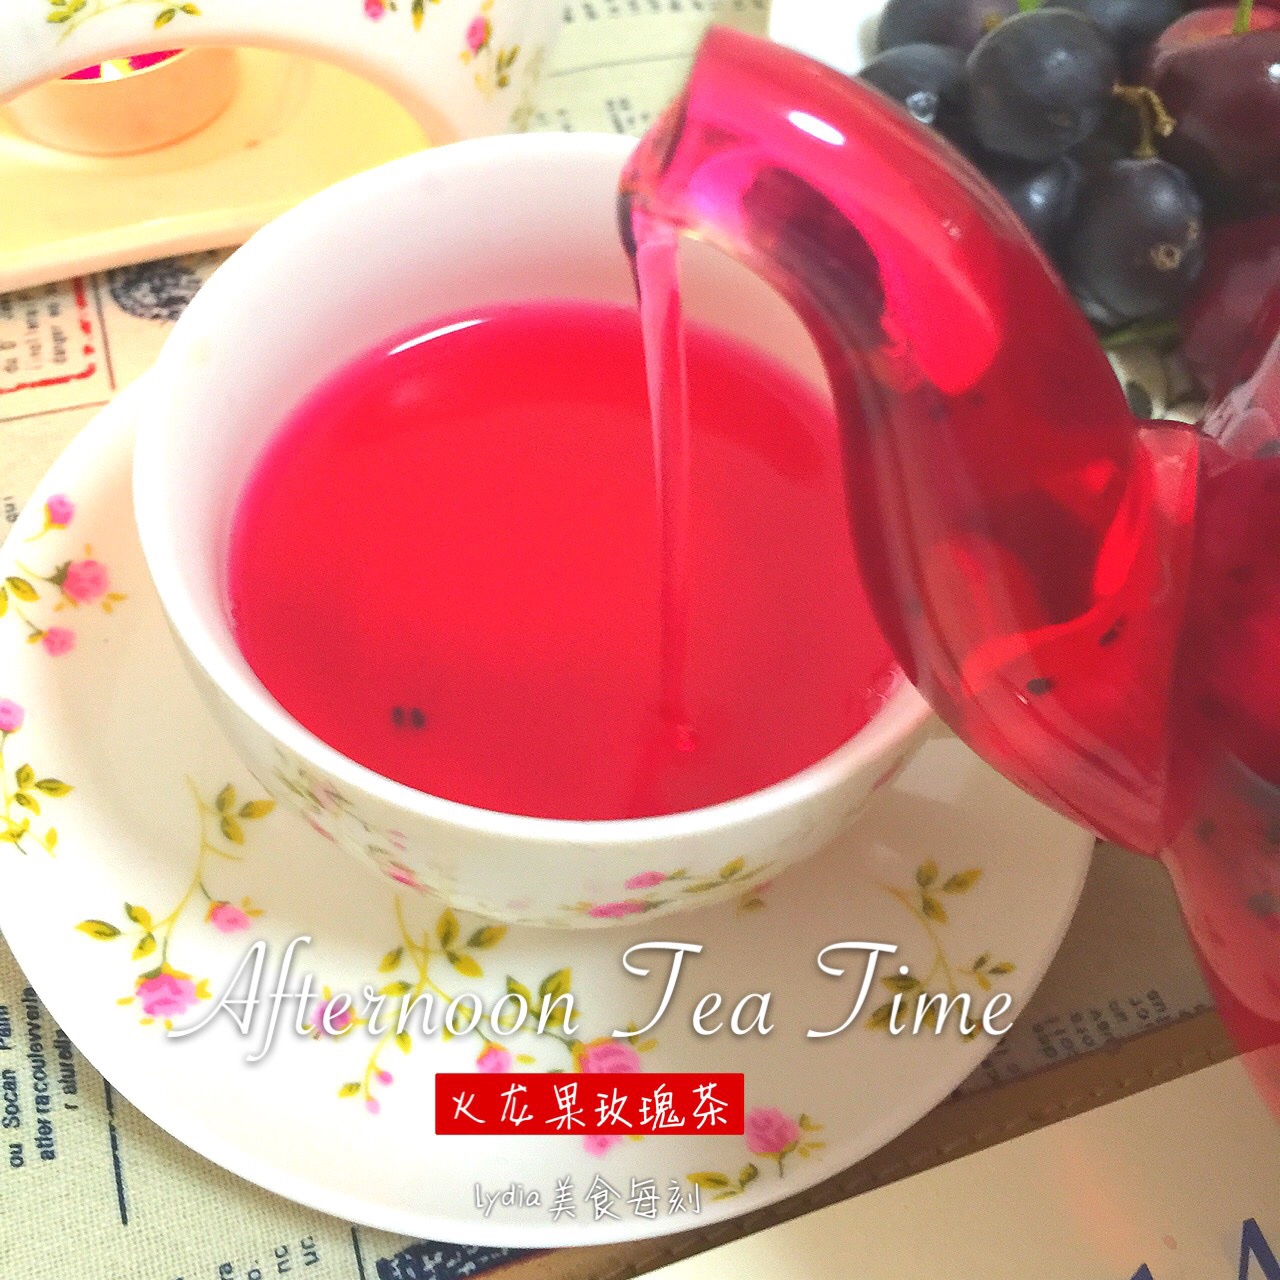 火龍果玫瑰茶